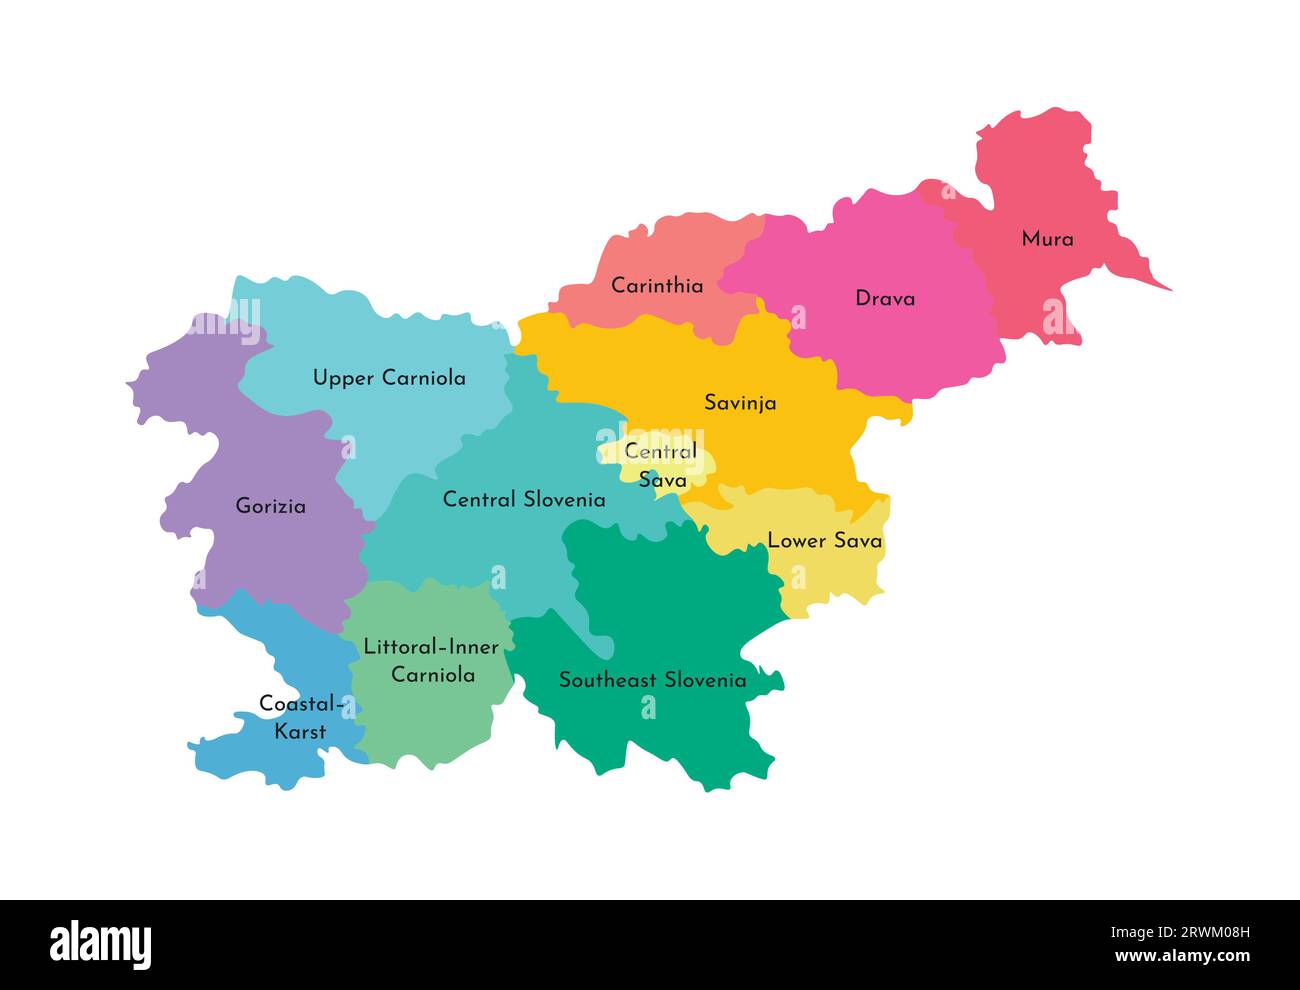 Vektorisolierte Darstellung der vereinfachten Verwaltungskarte Sloweniens. Grenzen und Namen der Regionen. Mehrfarbige Silhouetten. Stock Vektor